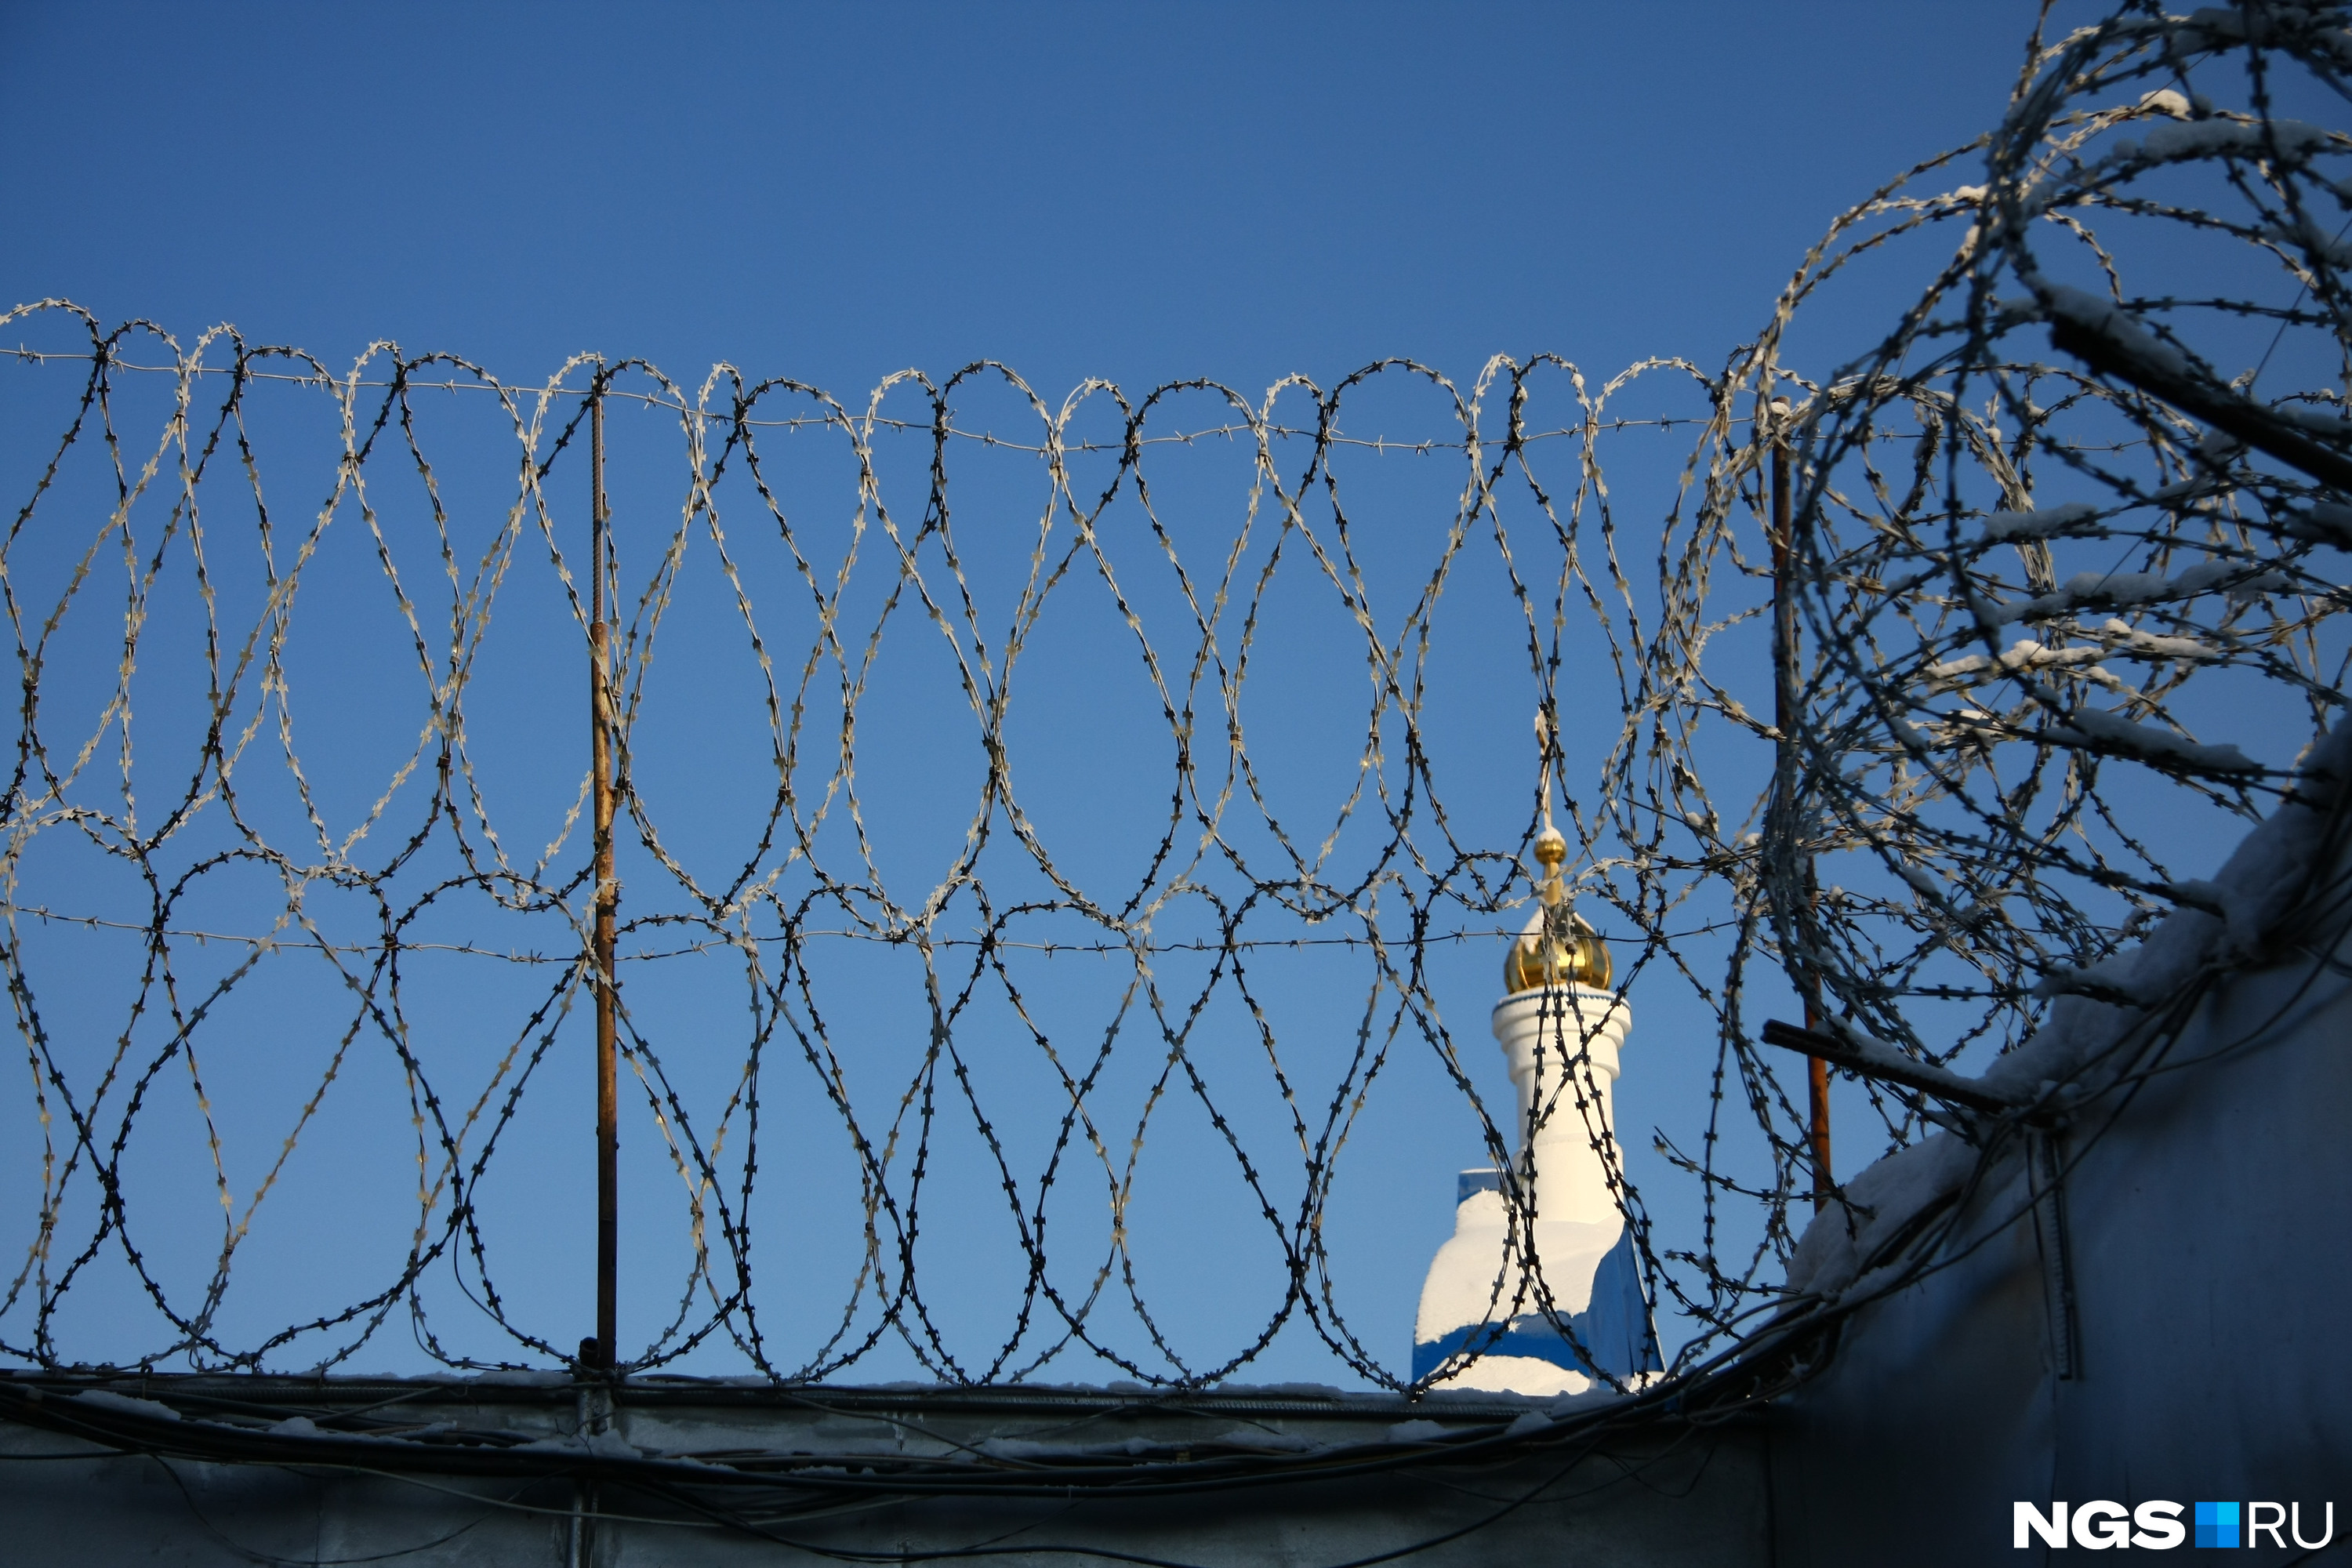 Вся связь с внешним миром у заключенных отсутствует с 30 октября, как утверждают их родственники